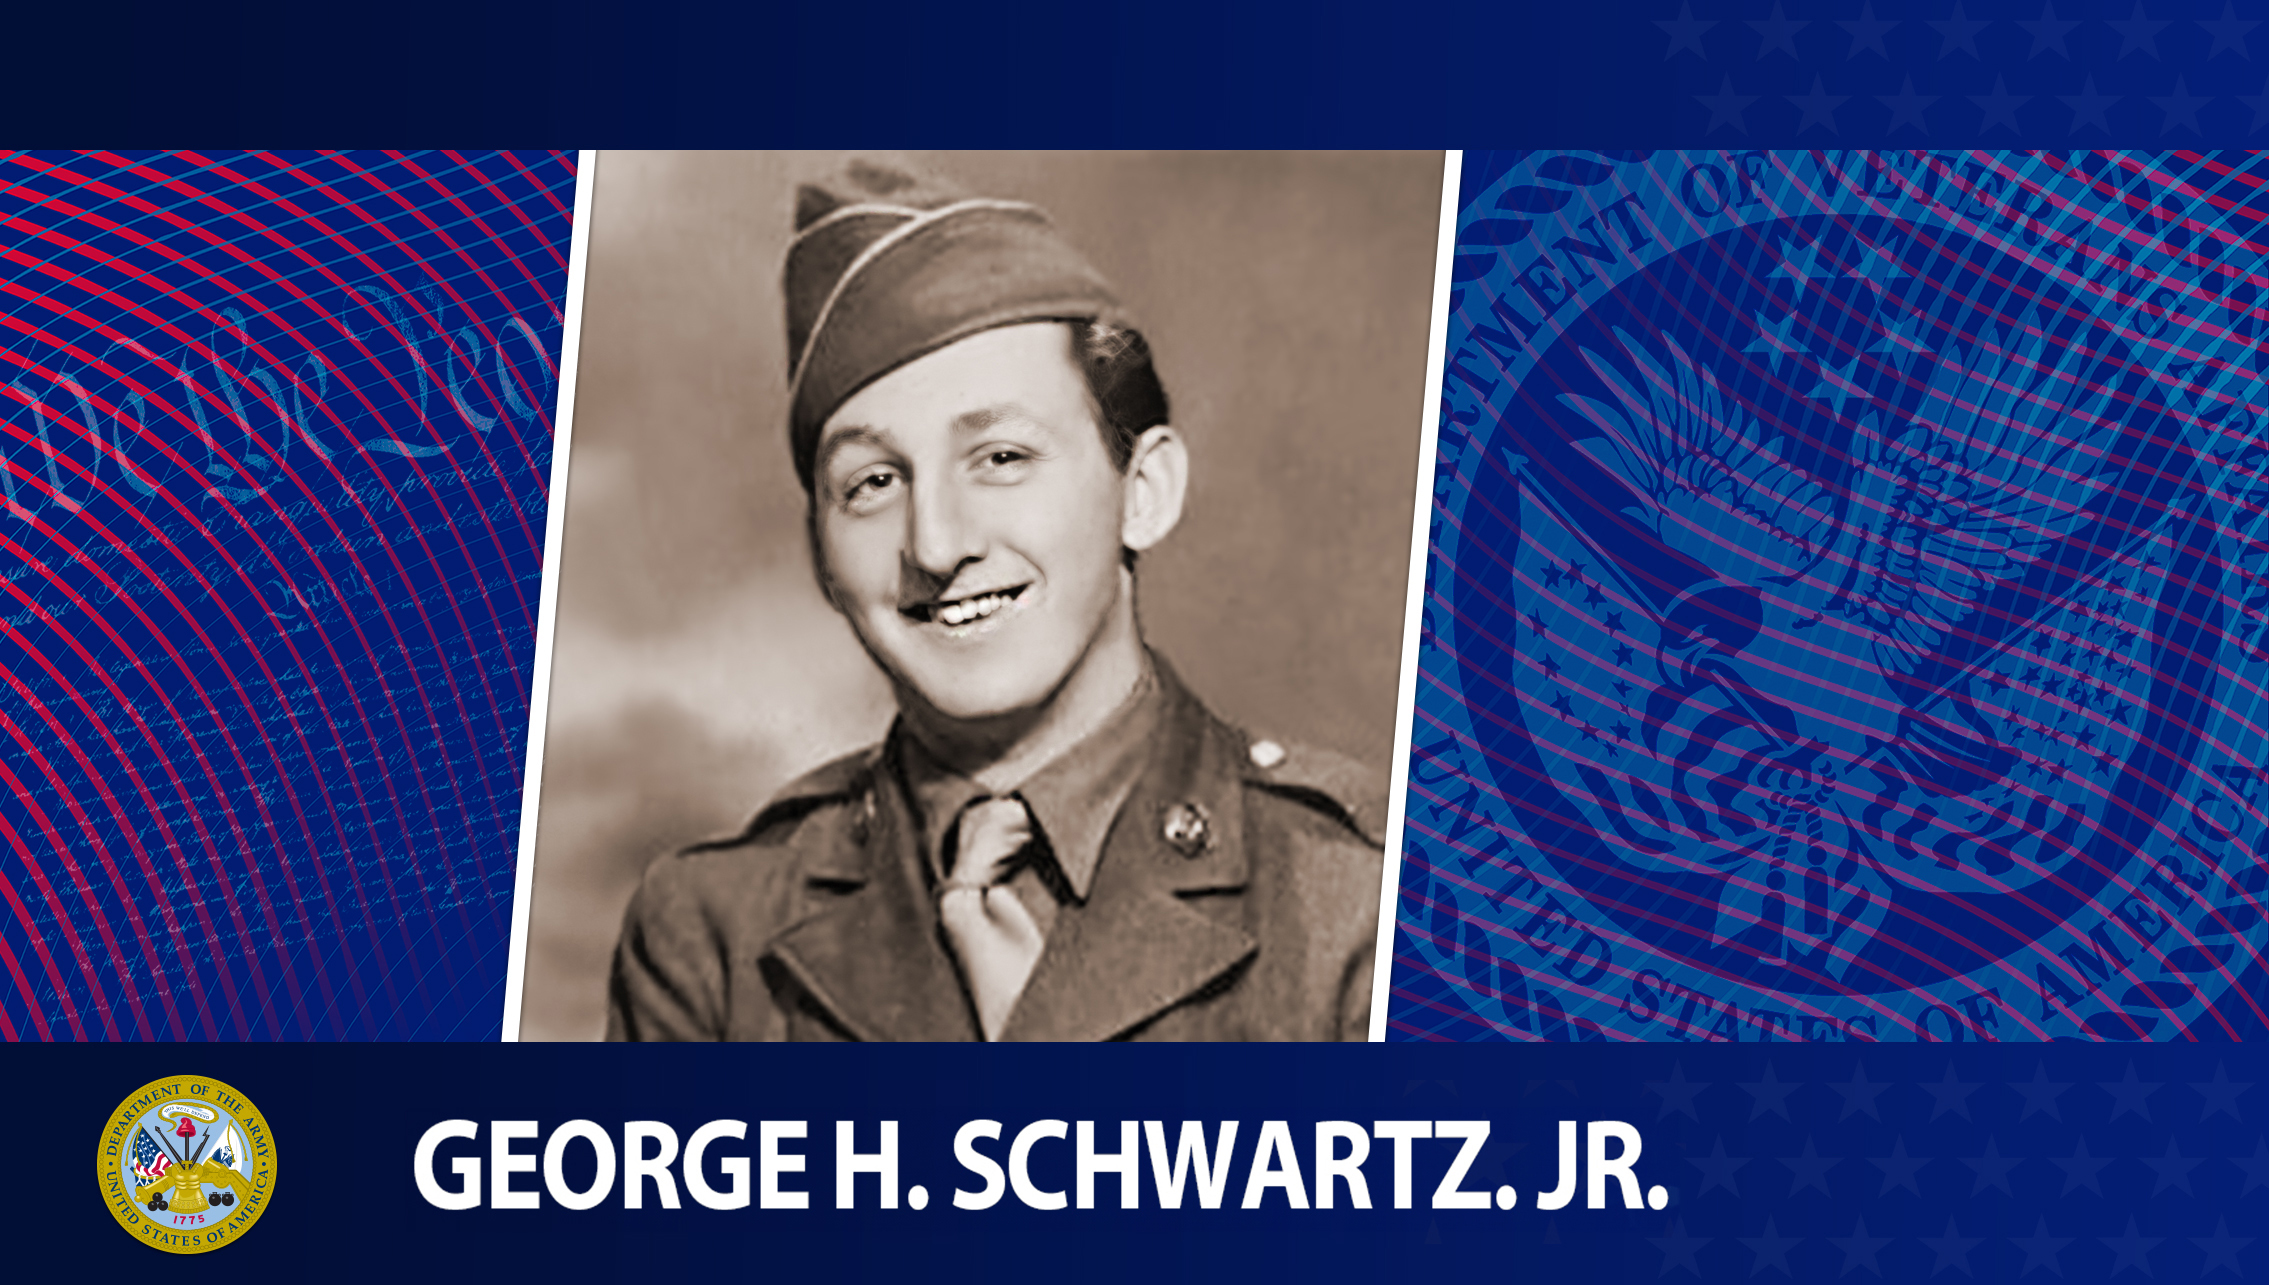 Read Honoring Veterans: Army Veteran George H. Schwartz. Jr.